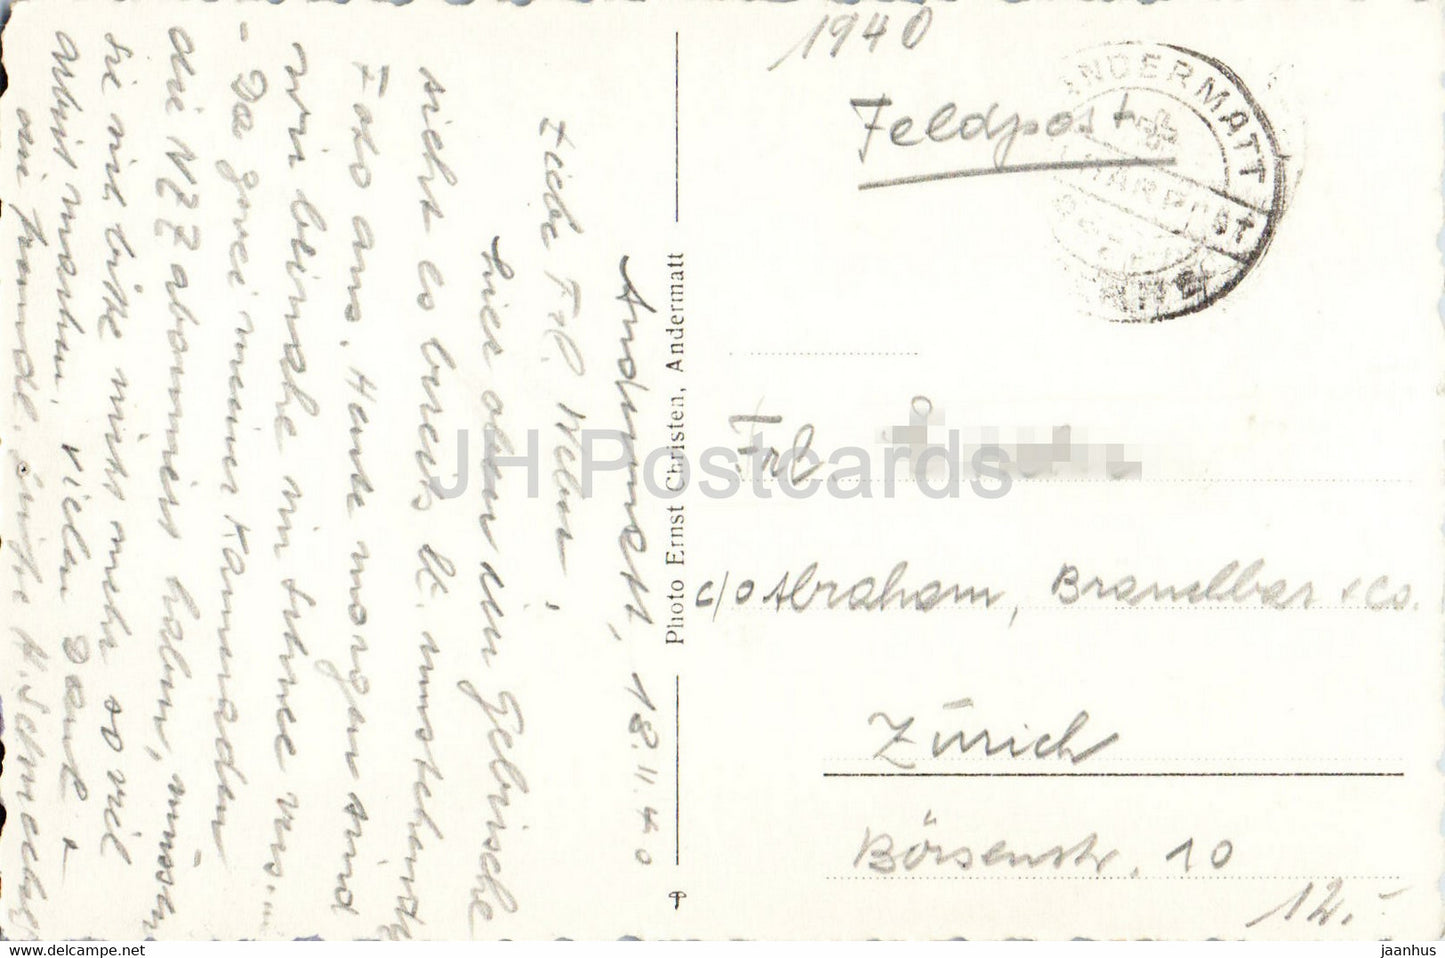 Andermatt mit Furka - Feldpost - Militärpost - 1940 - alte Postkarte - Schweiz - gebraucht